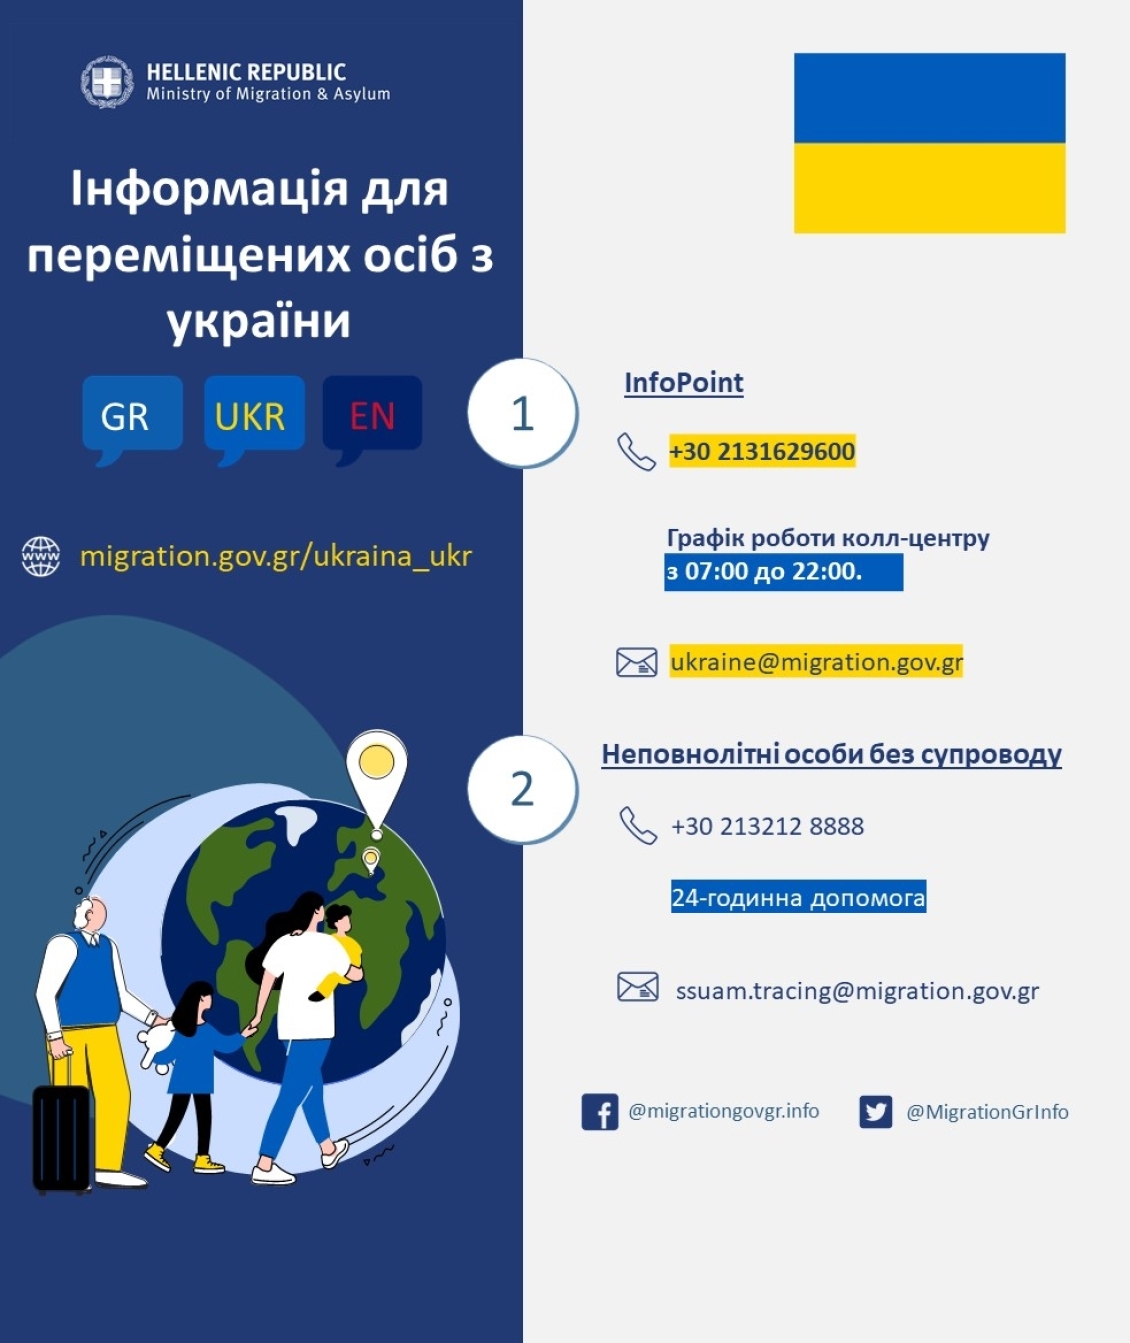 Ουκρανια_ukr